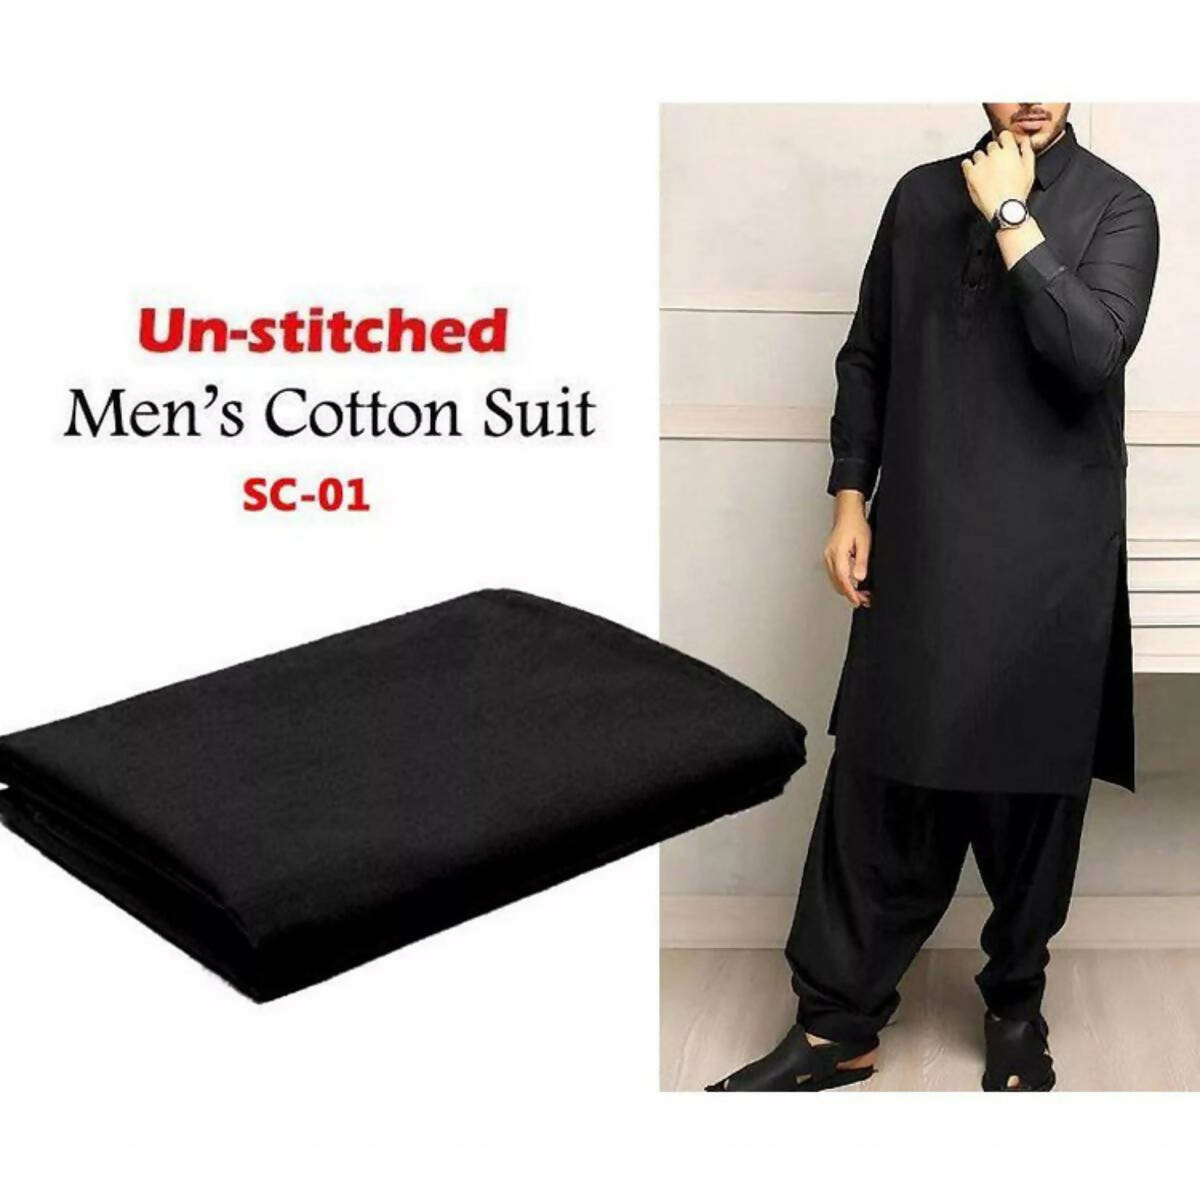 Gents cotton unstitiched suit